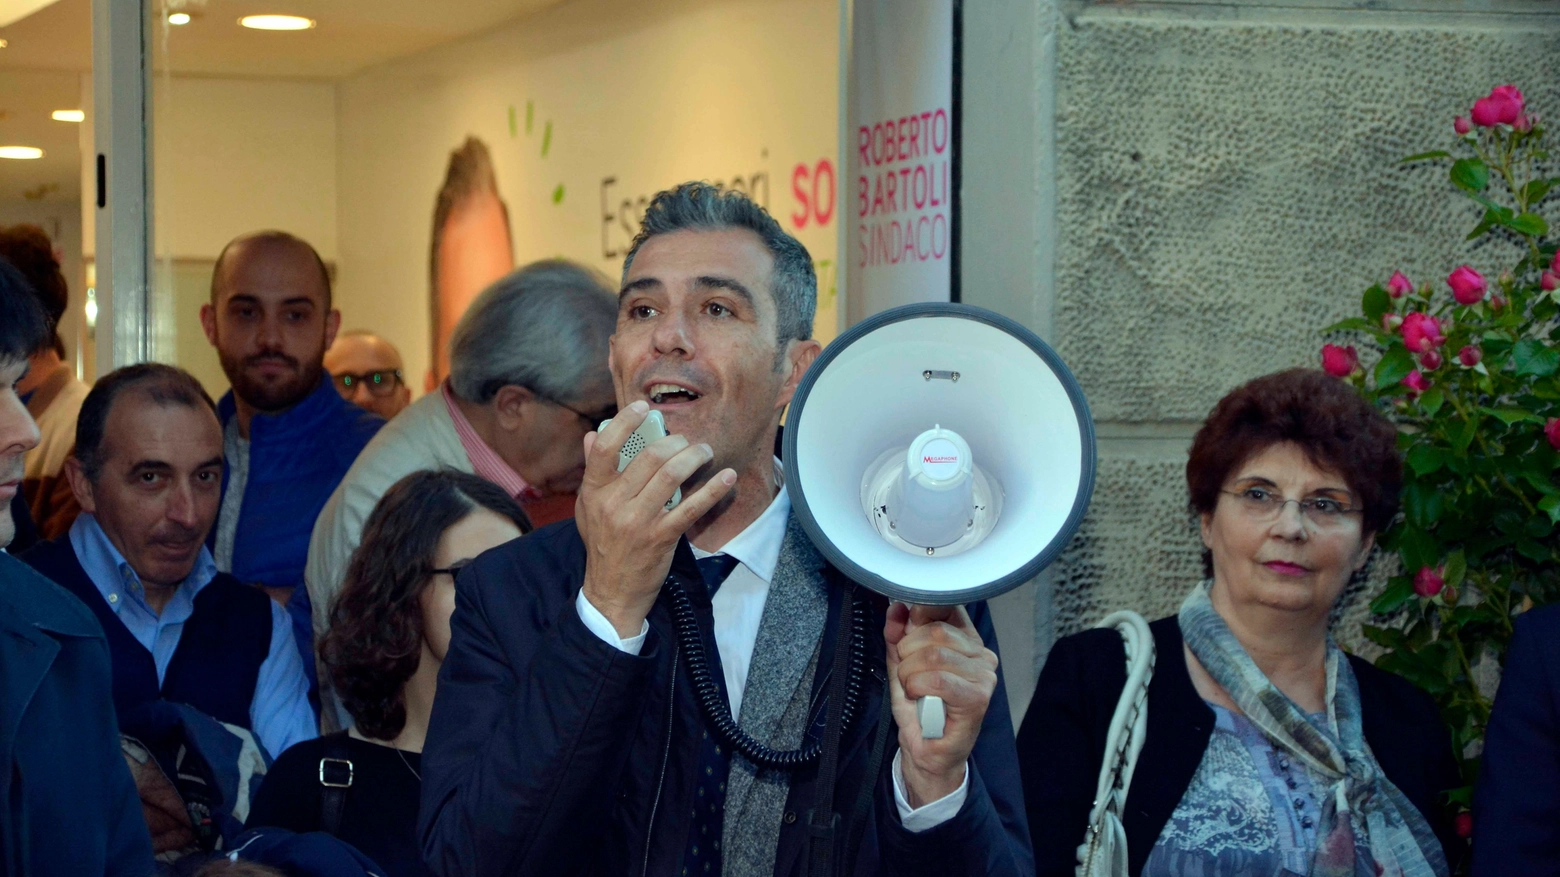 Roberto Bartoli inaugura la sua sede elettorale in via della Madonna (Quartieri)